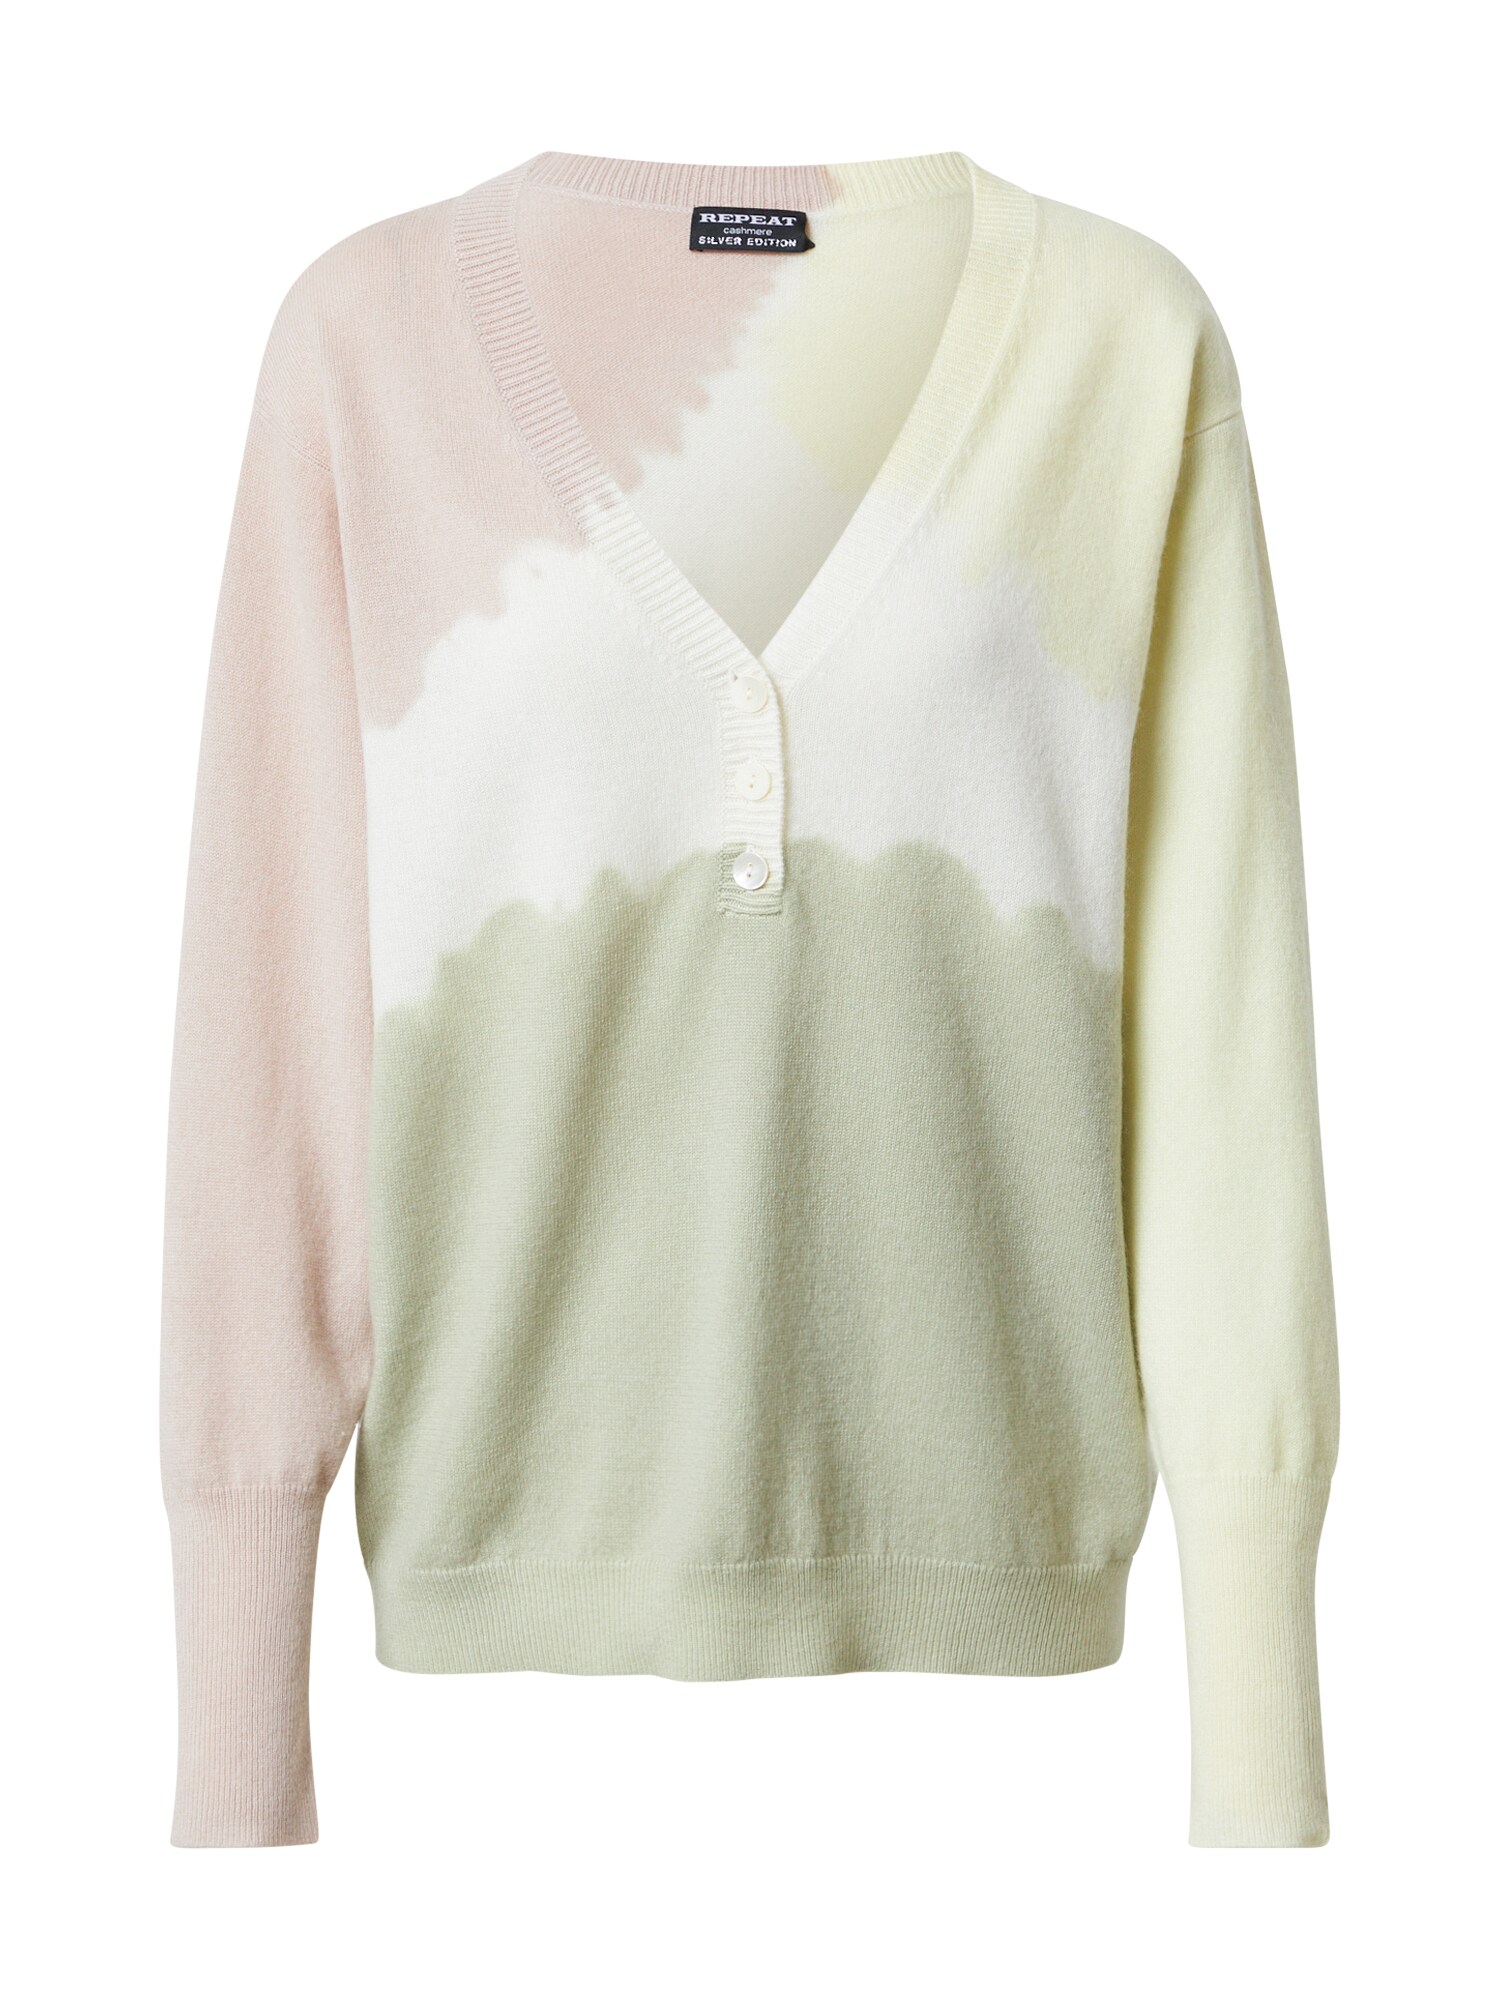 REPEAT Cashmere Megztinis balta / ryškiai rožinė spalva / pastelinė žalia / pastelinė geltona